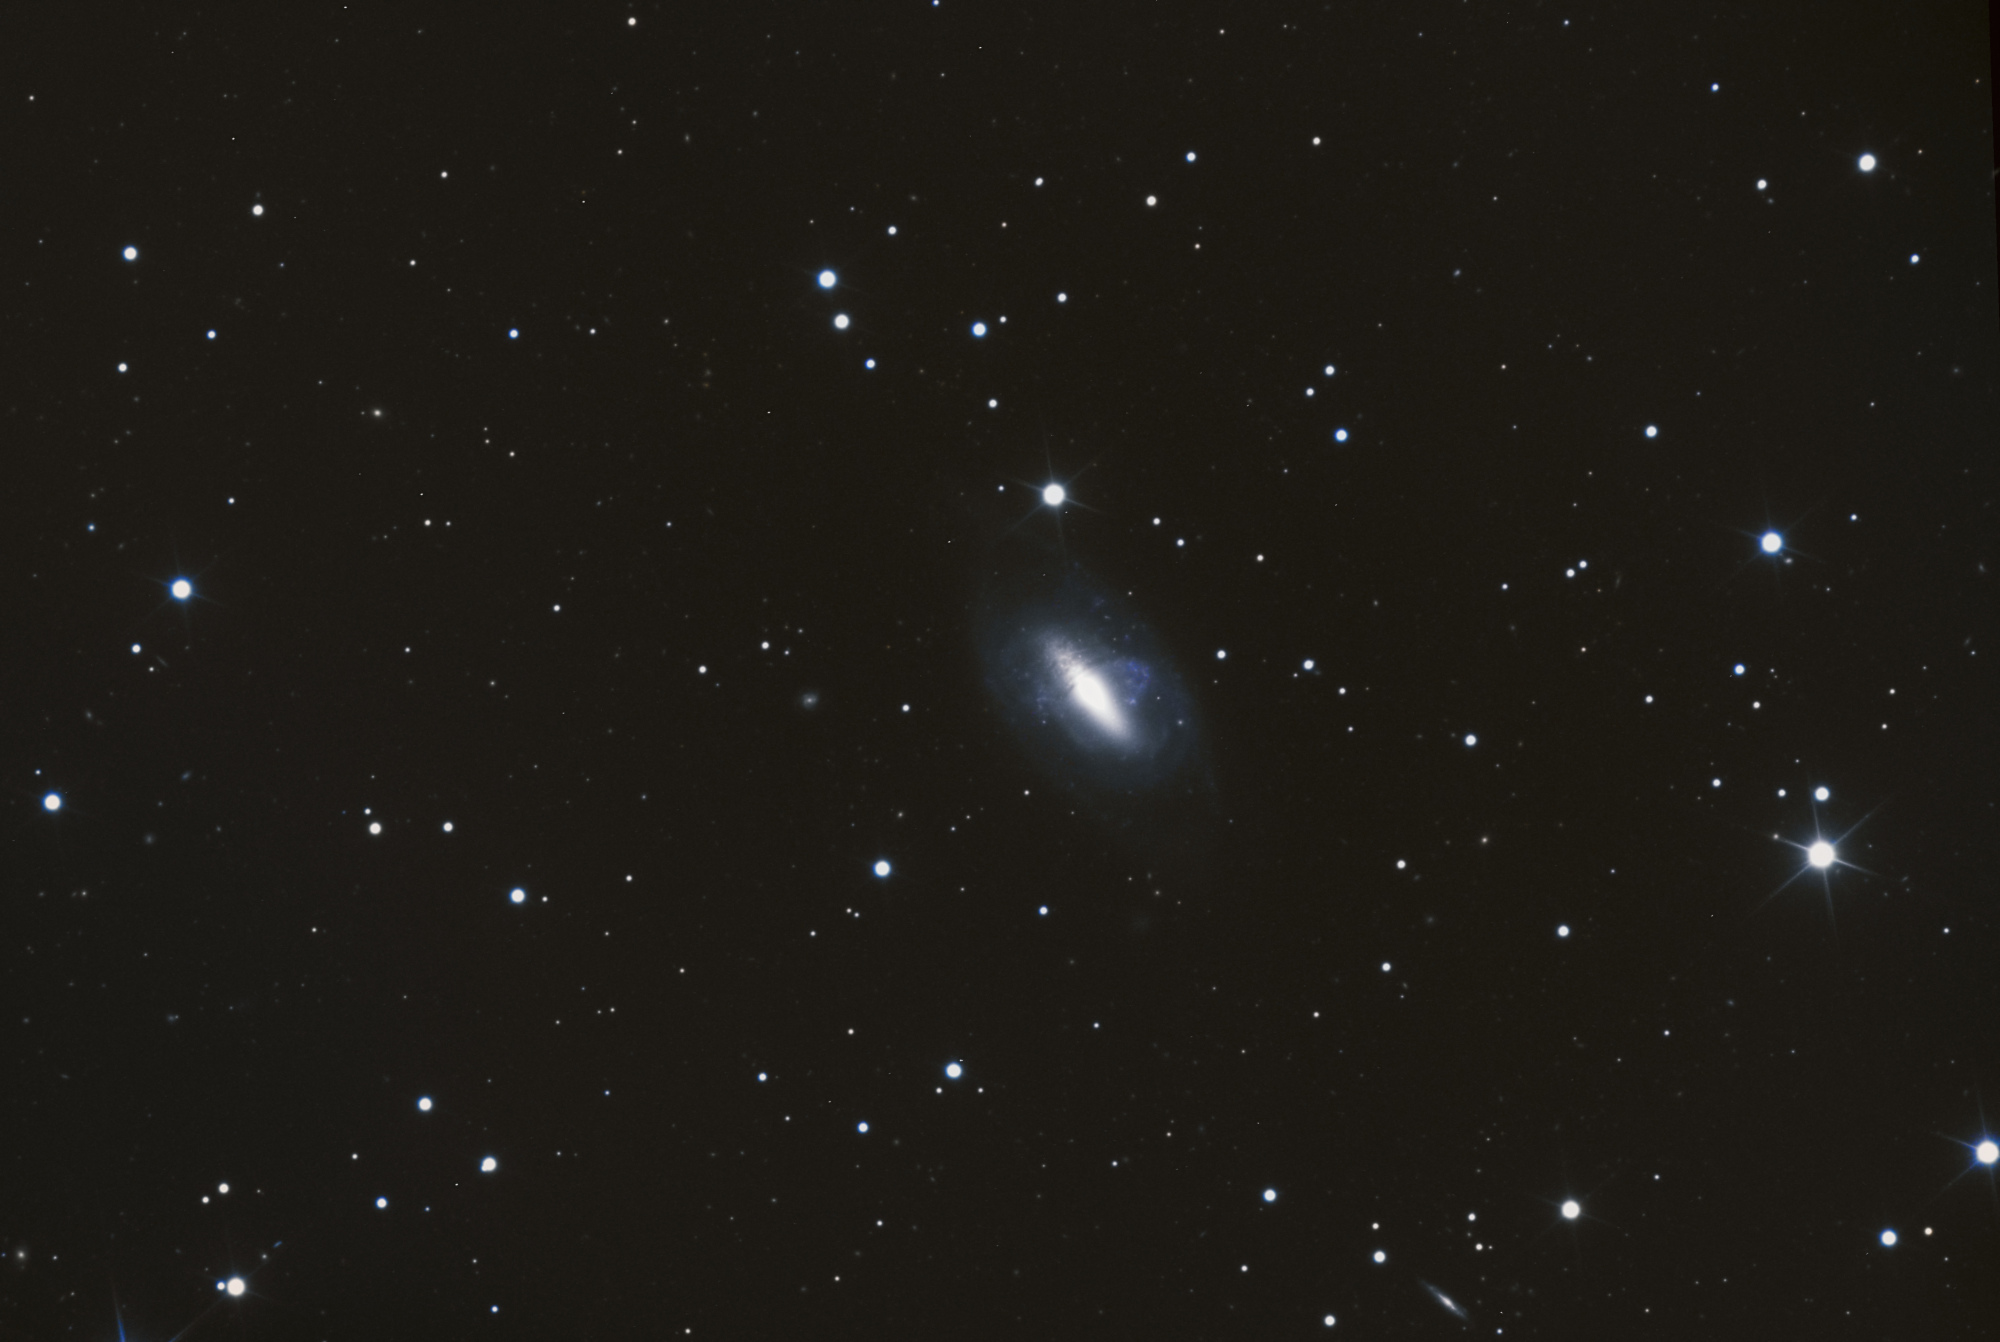 NGC_2685_Finale1.thumb.jpg.f9c20235c8e68f684edc06f18b2947f7.jpg